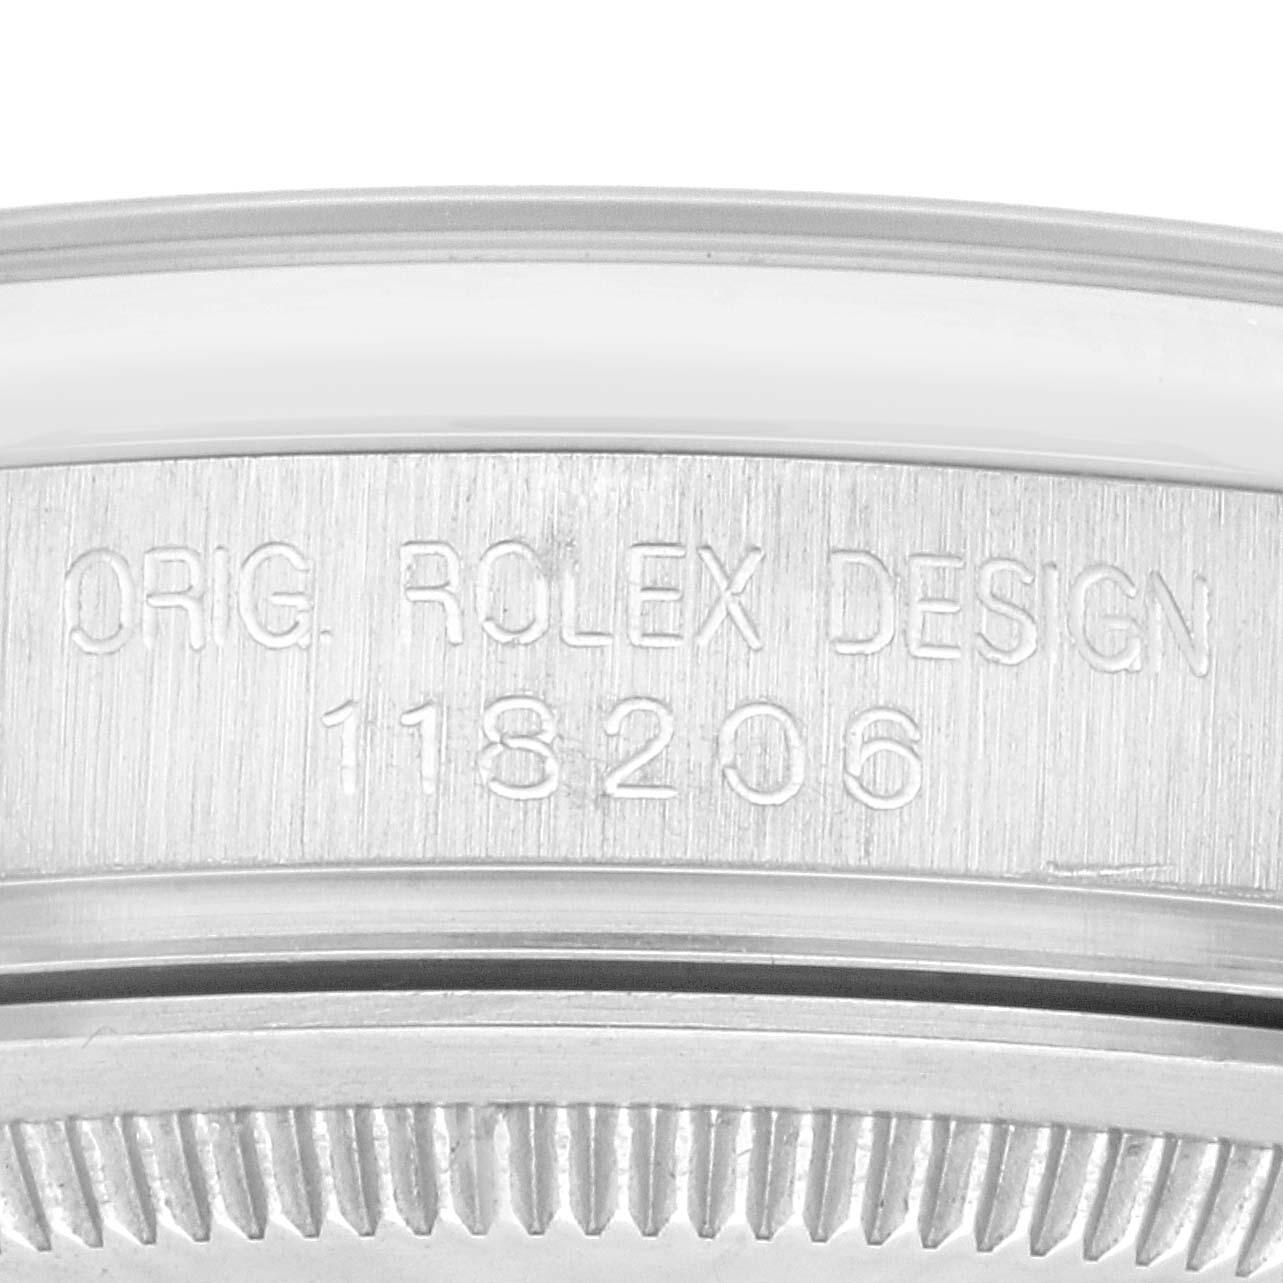 Rolex Day-Date Präsident Diamant-Zifferblatt Platin Herrenuhr 118206 Box Papiere. Offiziell zertifiziertes Chronometerwerk mit automatischem Aufzug und Datumsschnellverstellung. Platin-Oyster-Gehäuse mit einem Durchmesser von 36.0 mm. Rolex Logo auf